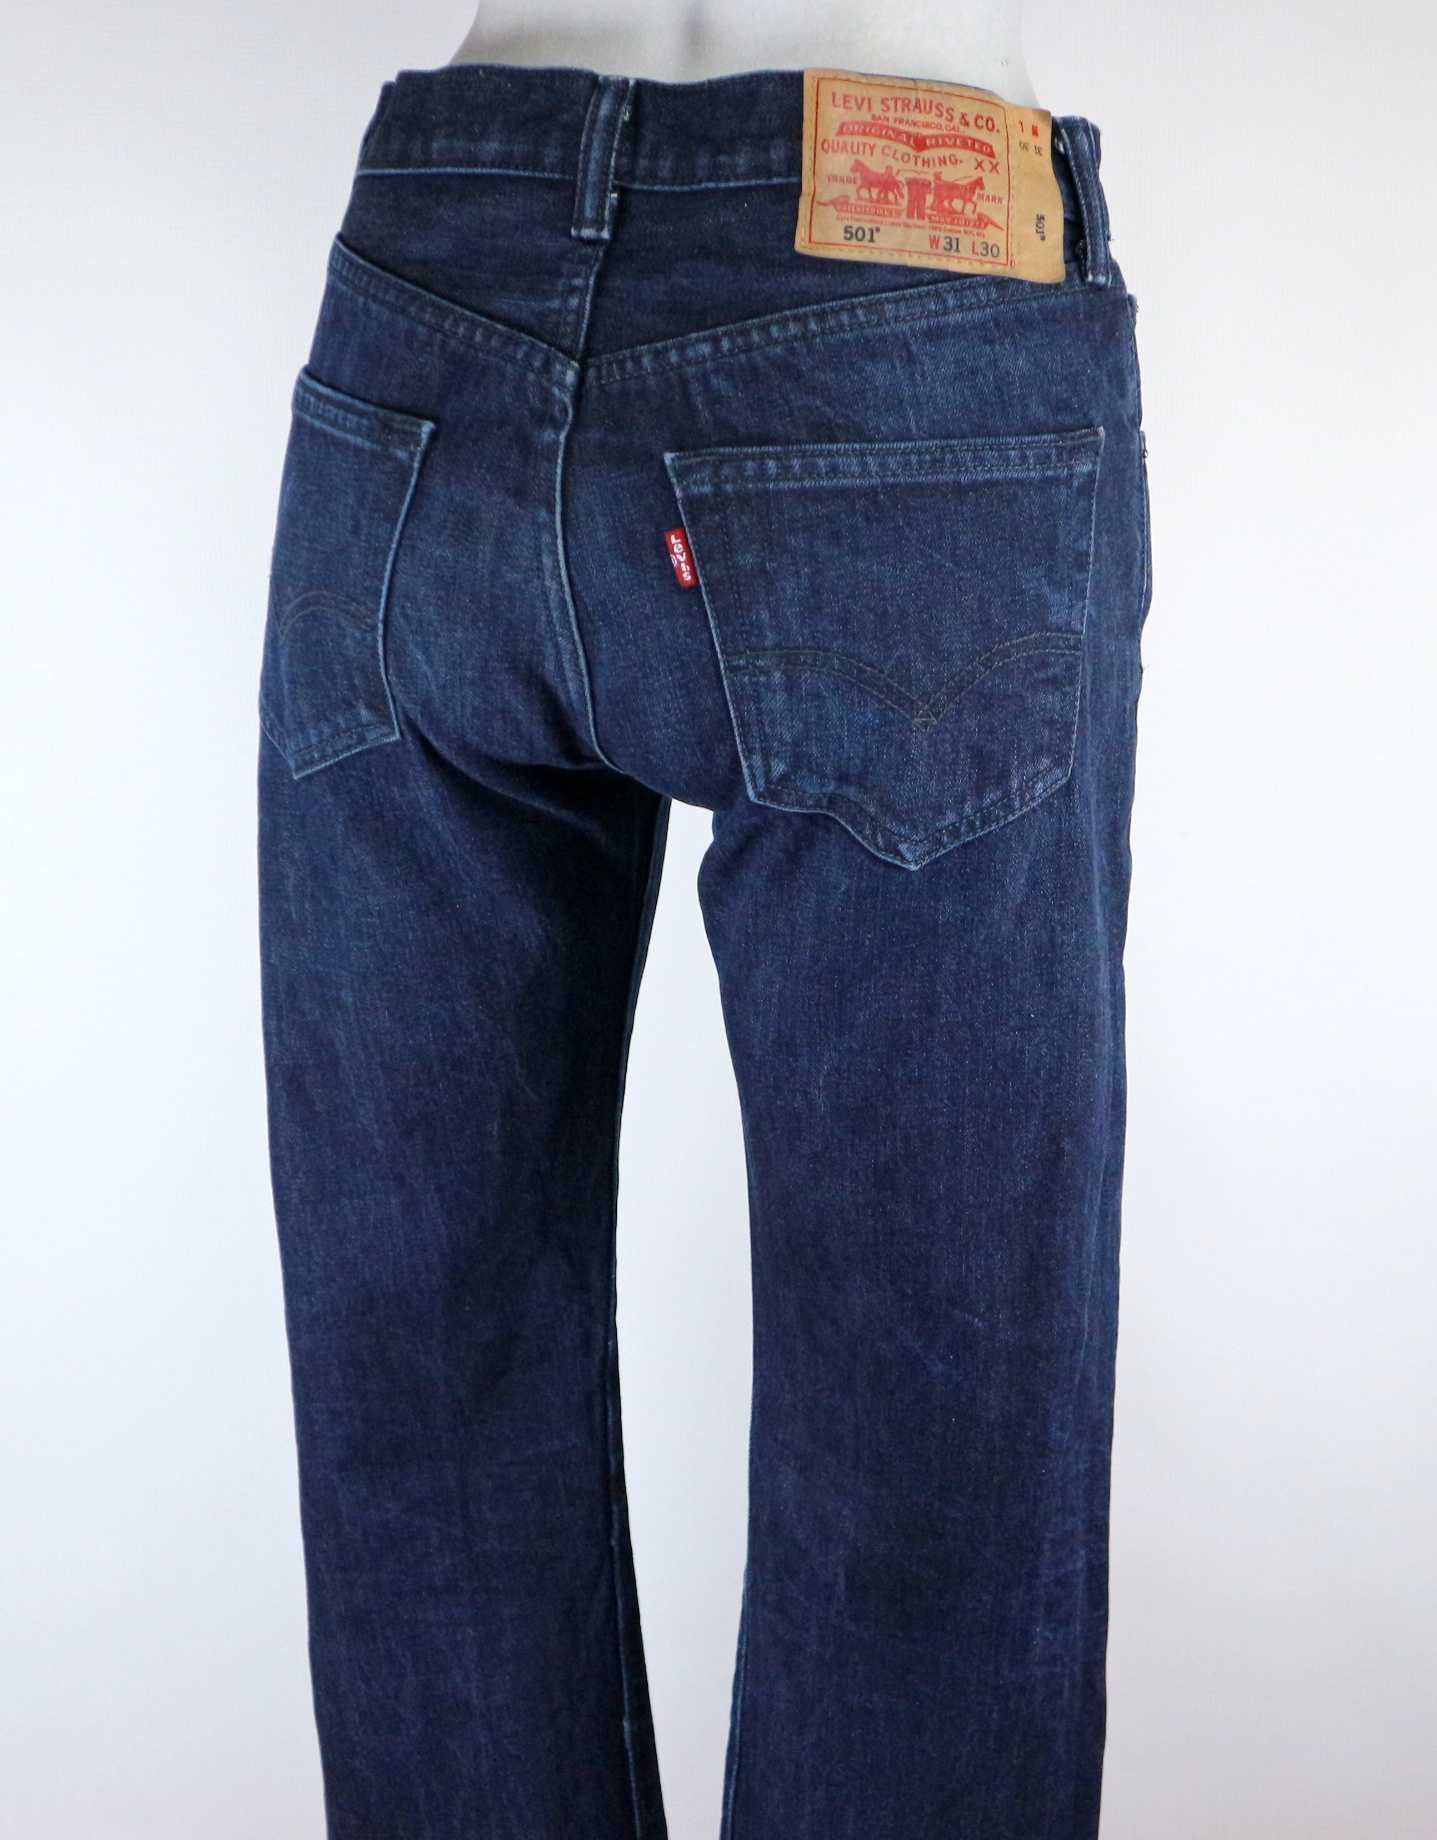 Levis 501 spodnie jeansy W31 L30 pas 2 x 38 cm